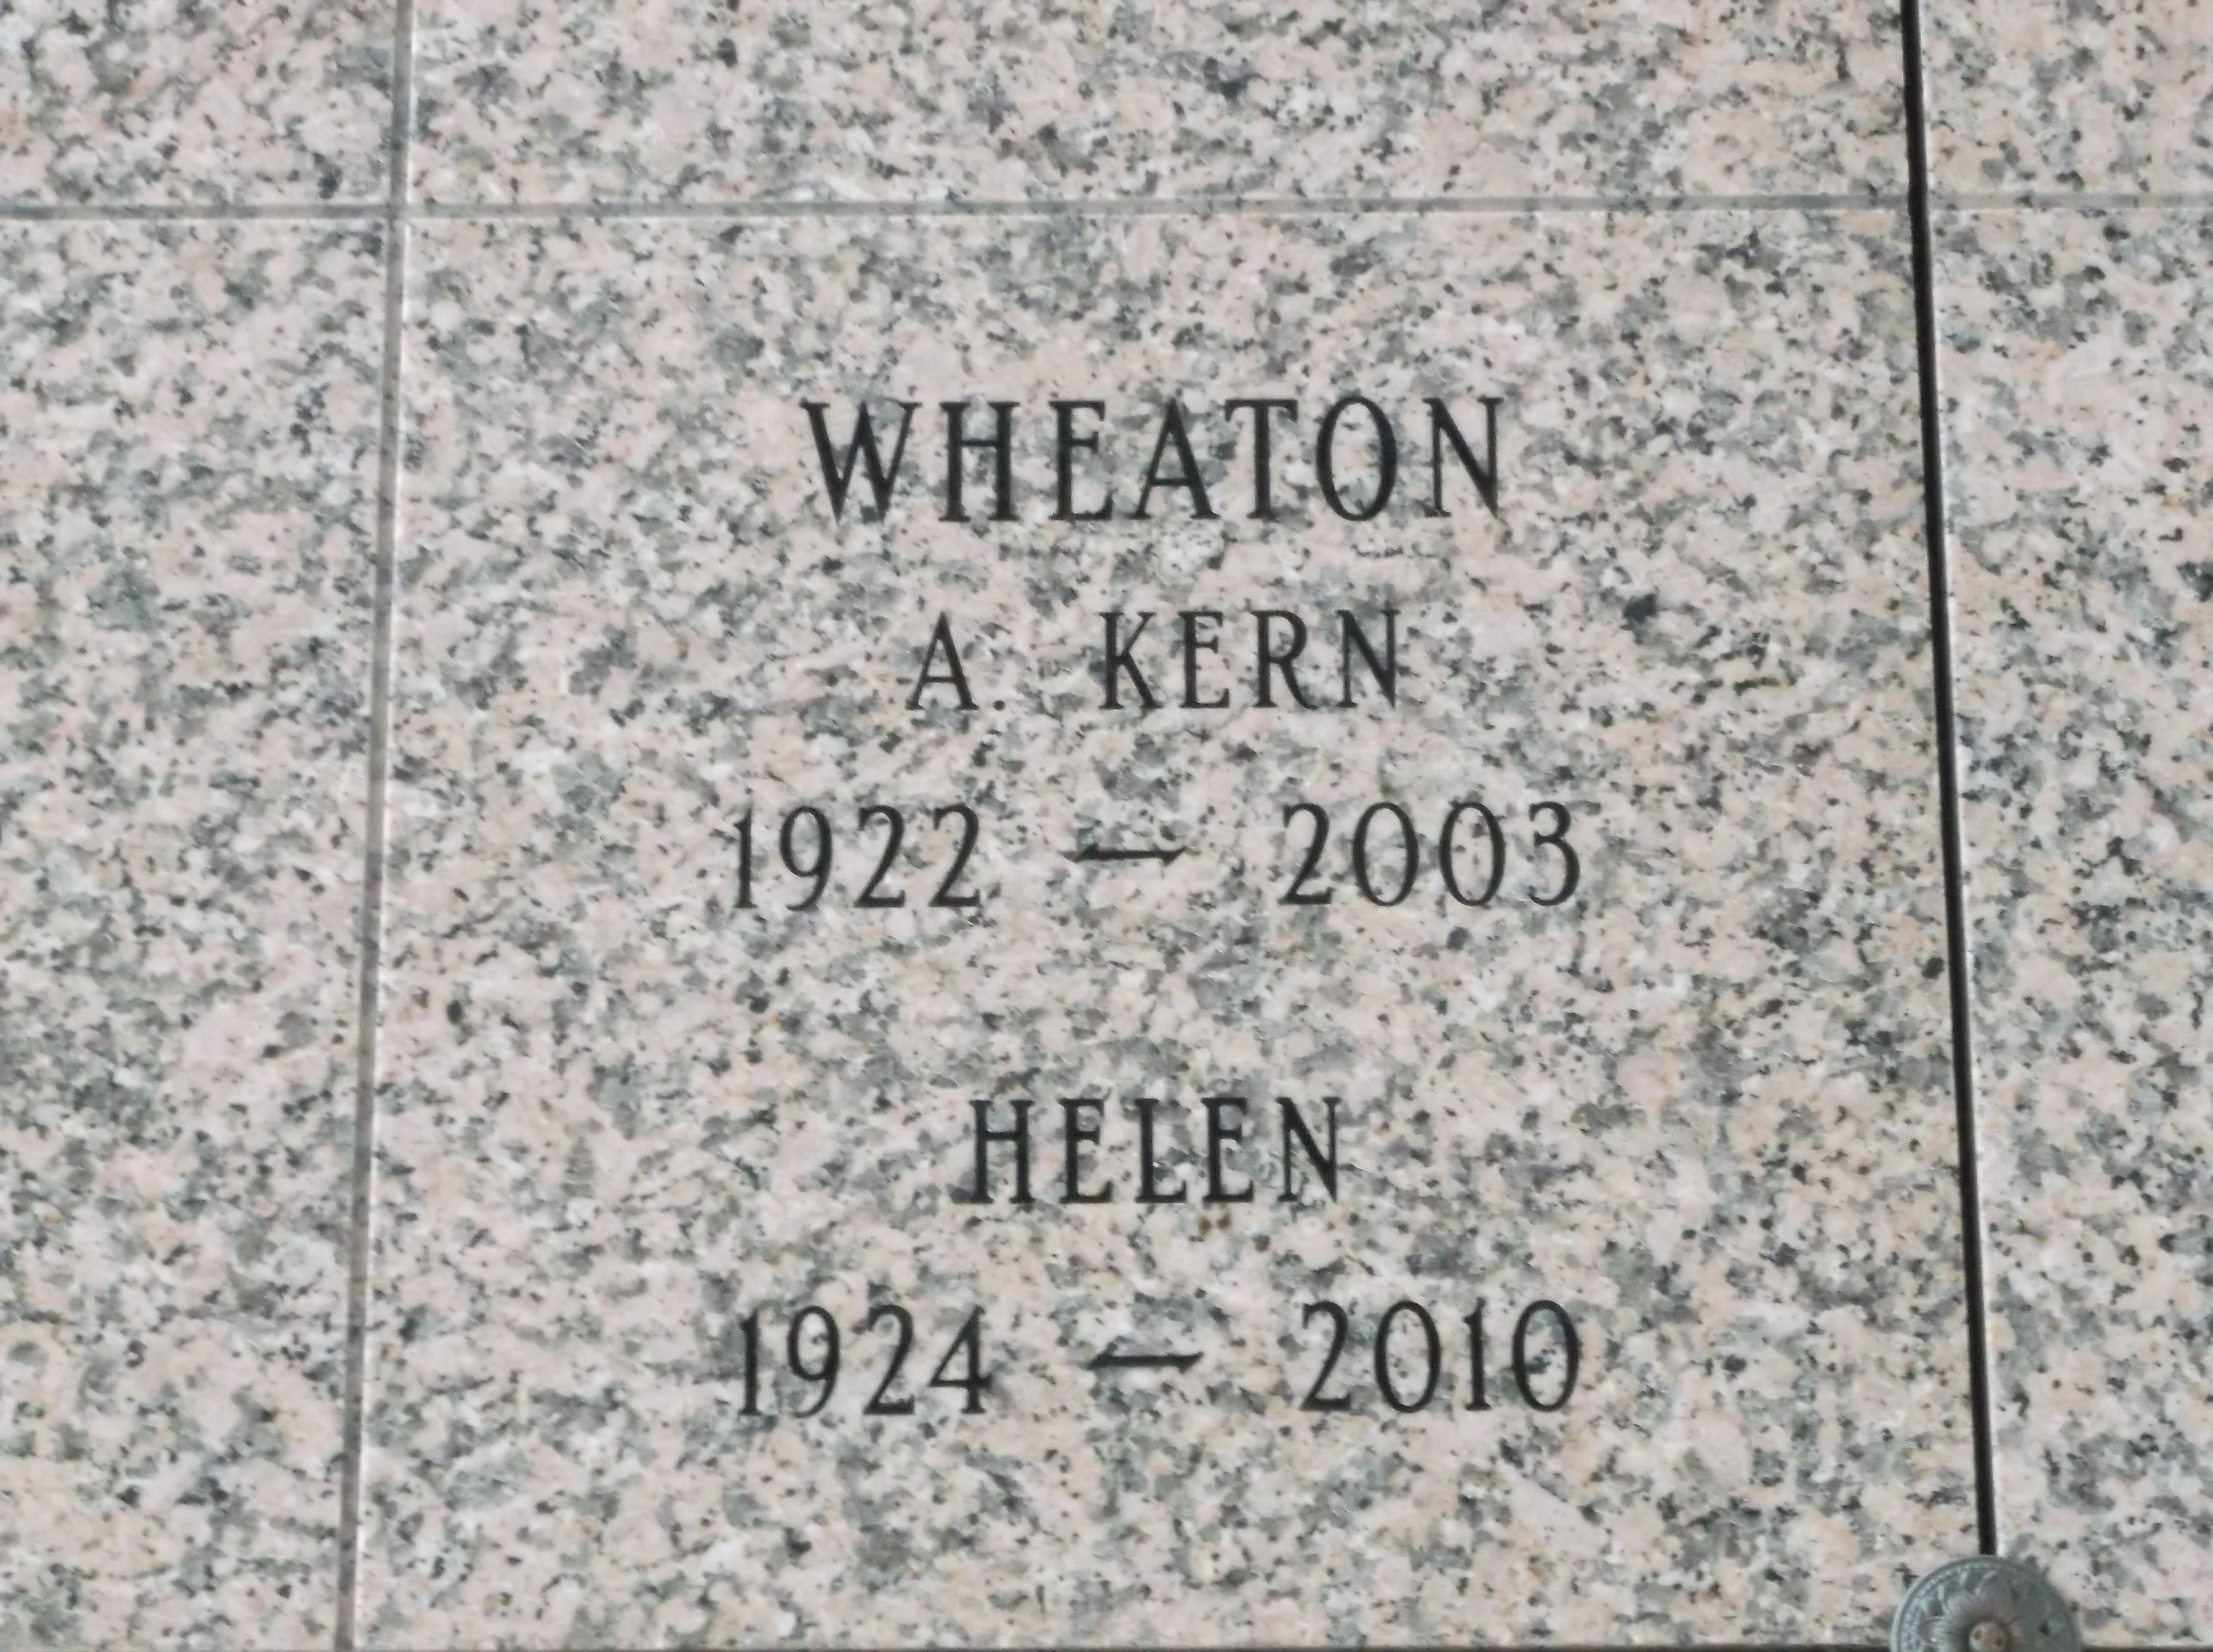 A Kern Wheaton